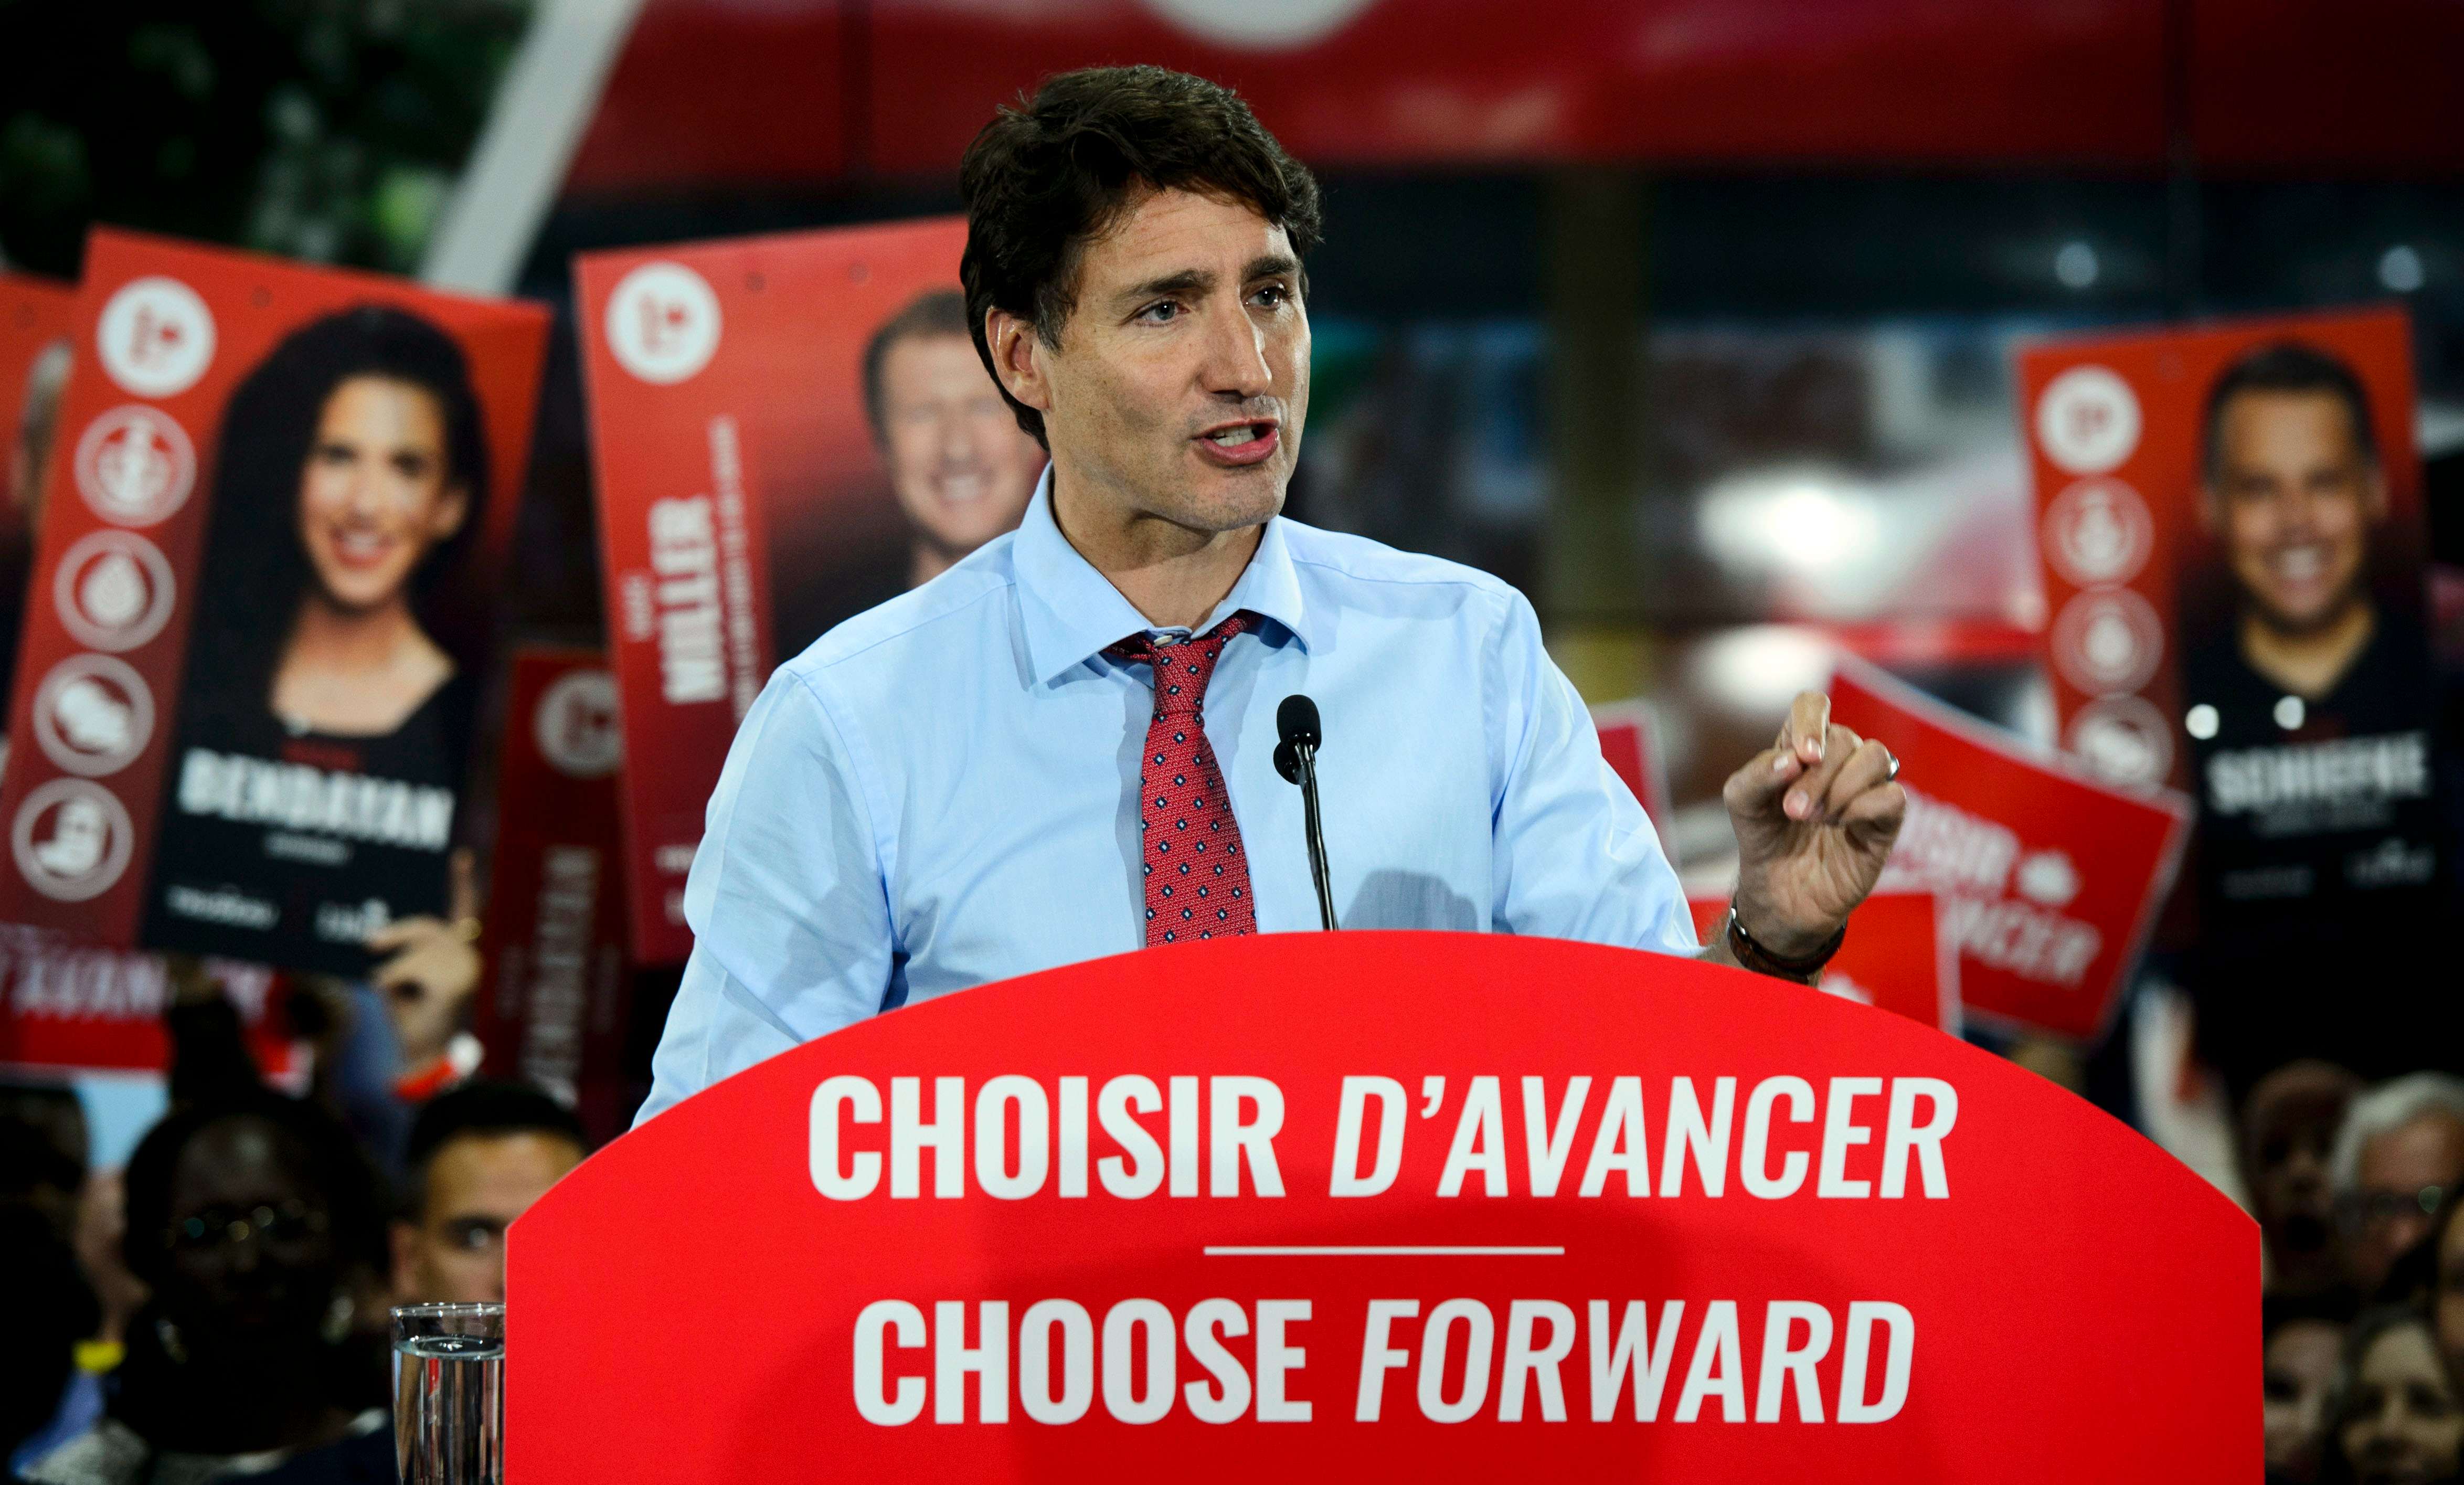 加拿大总理特鲁多出席竞选活动与民众亲切交流